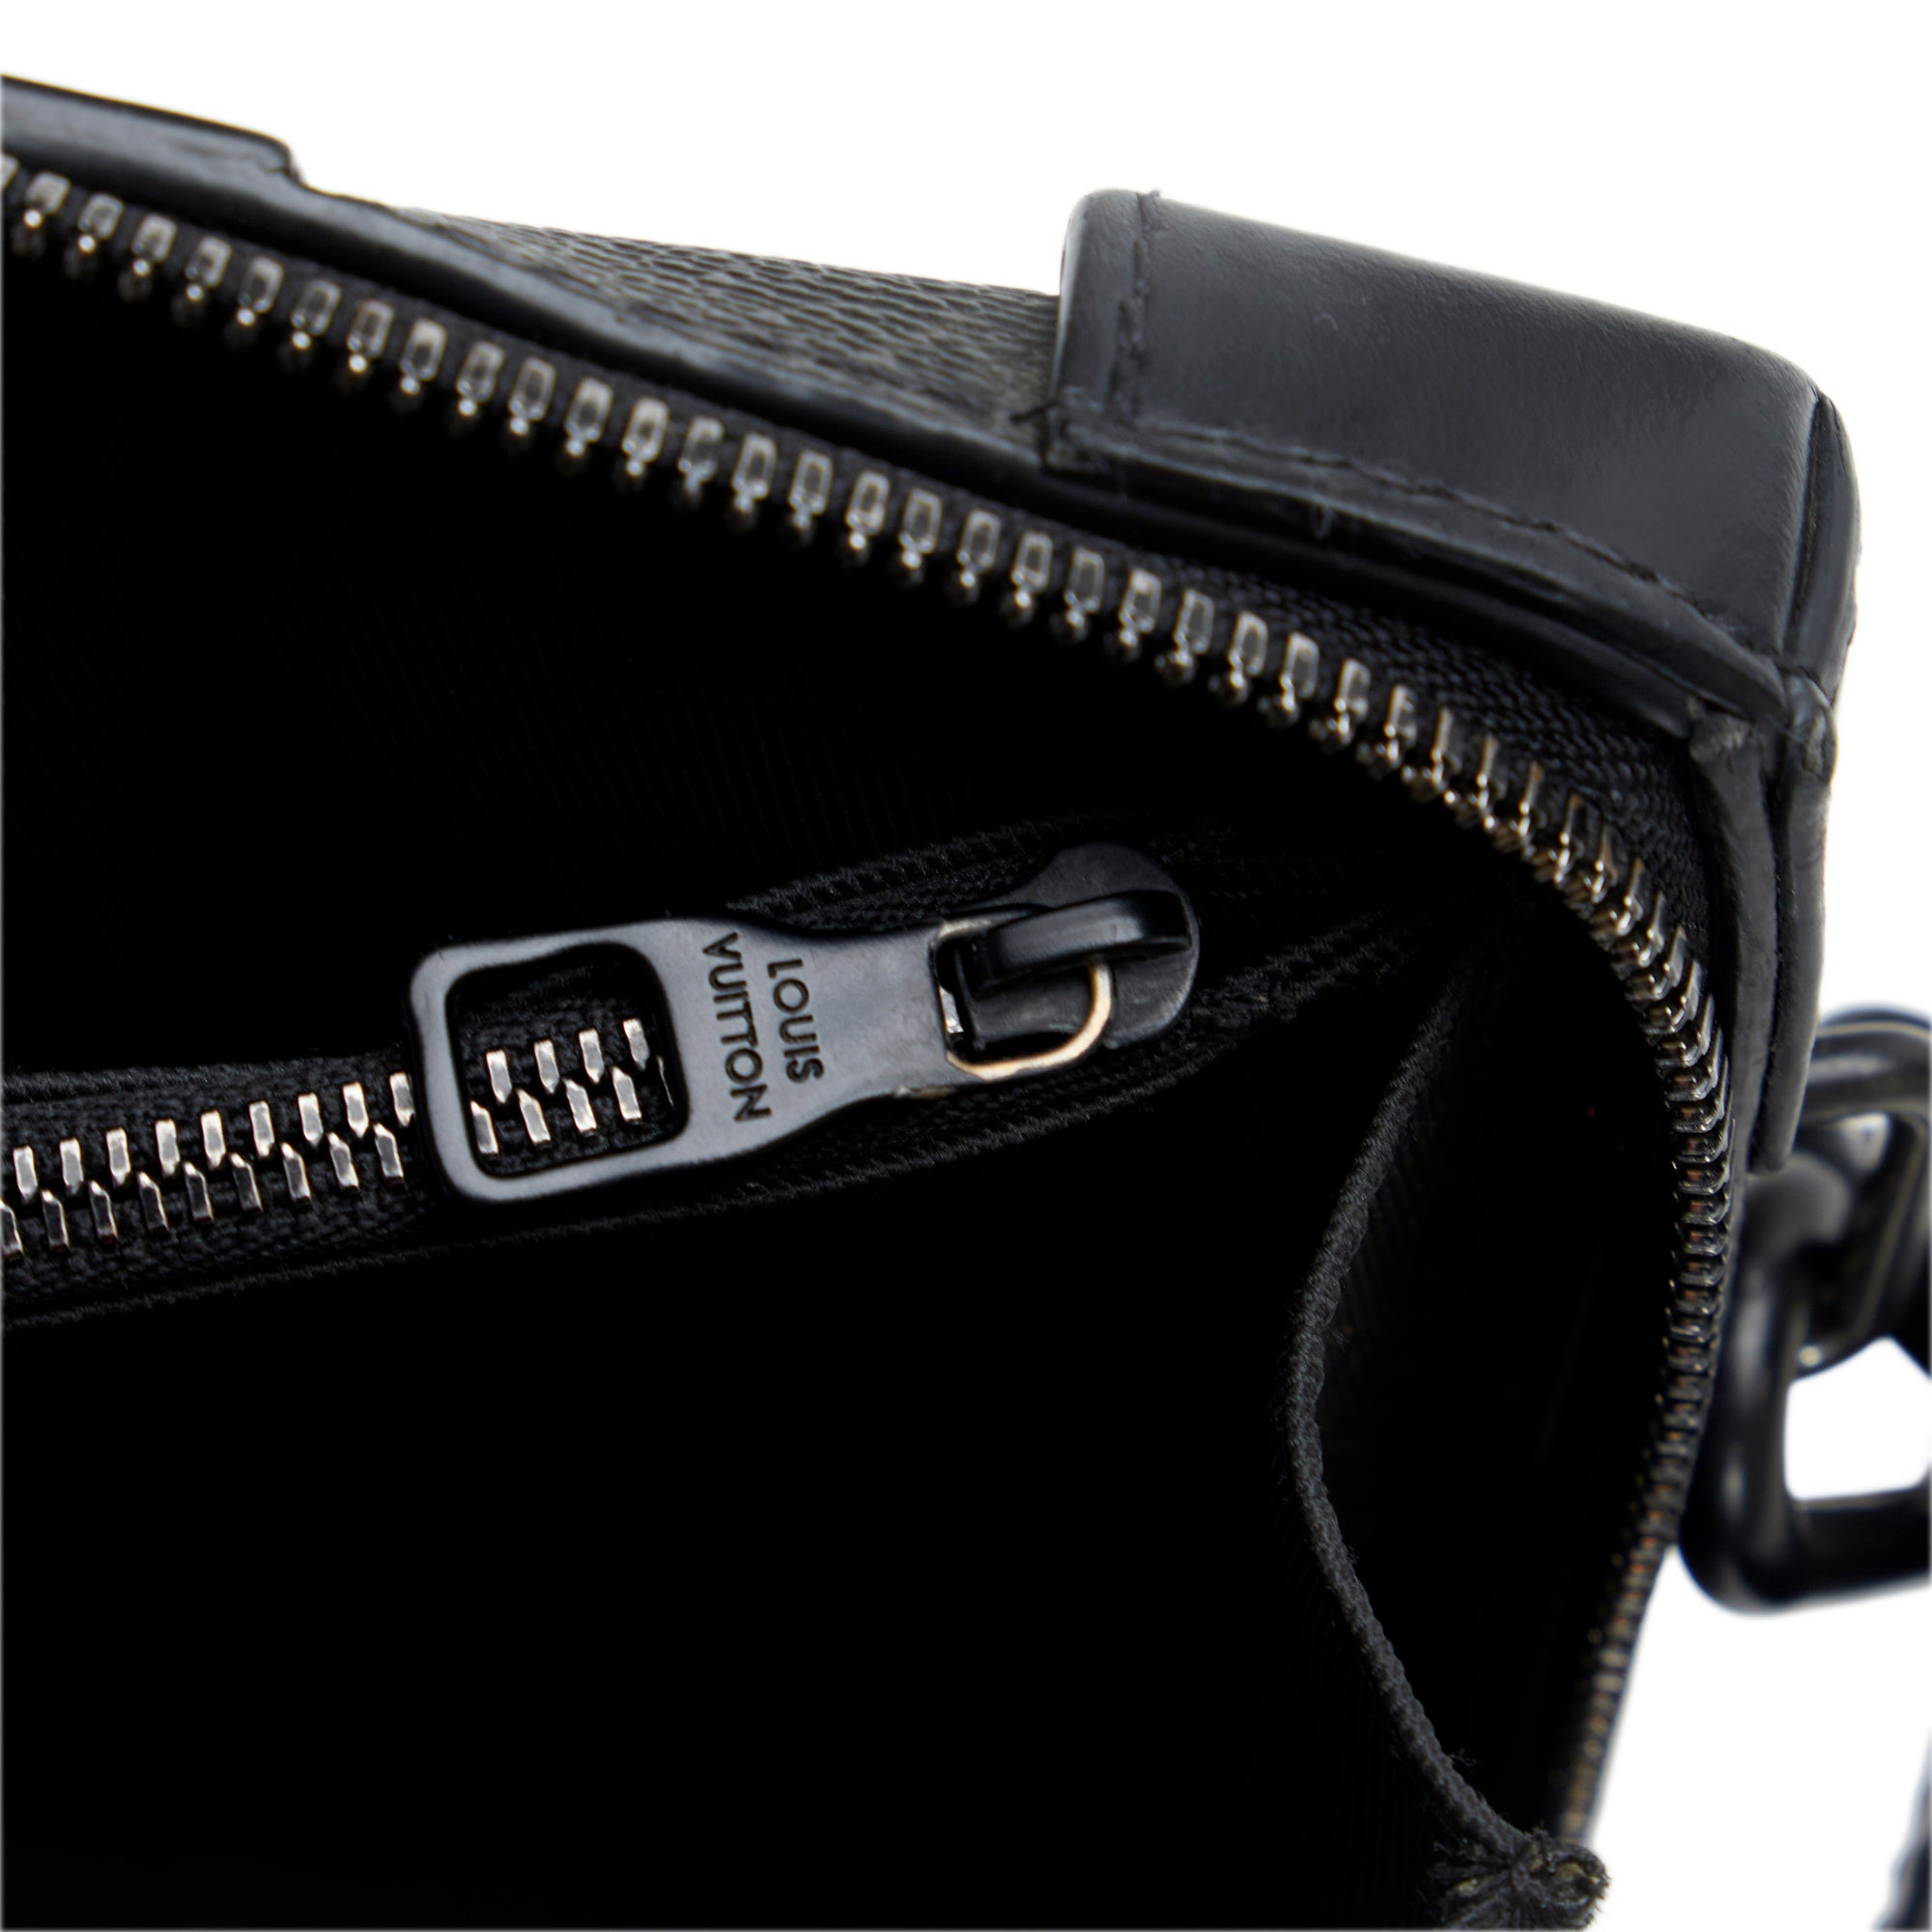 Louis Vuitton Monogram Eclipse Trunk Messenger Bag - Black